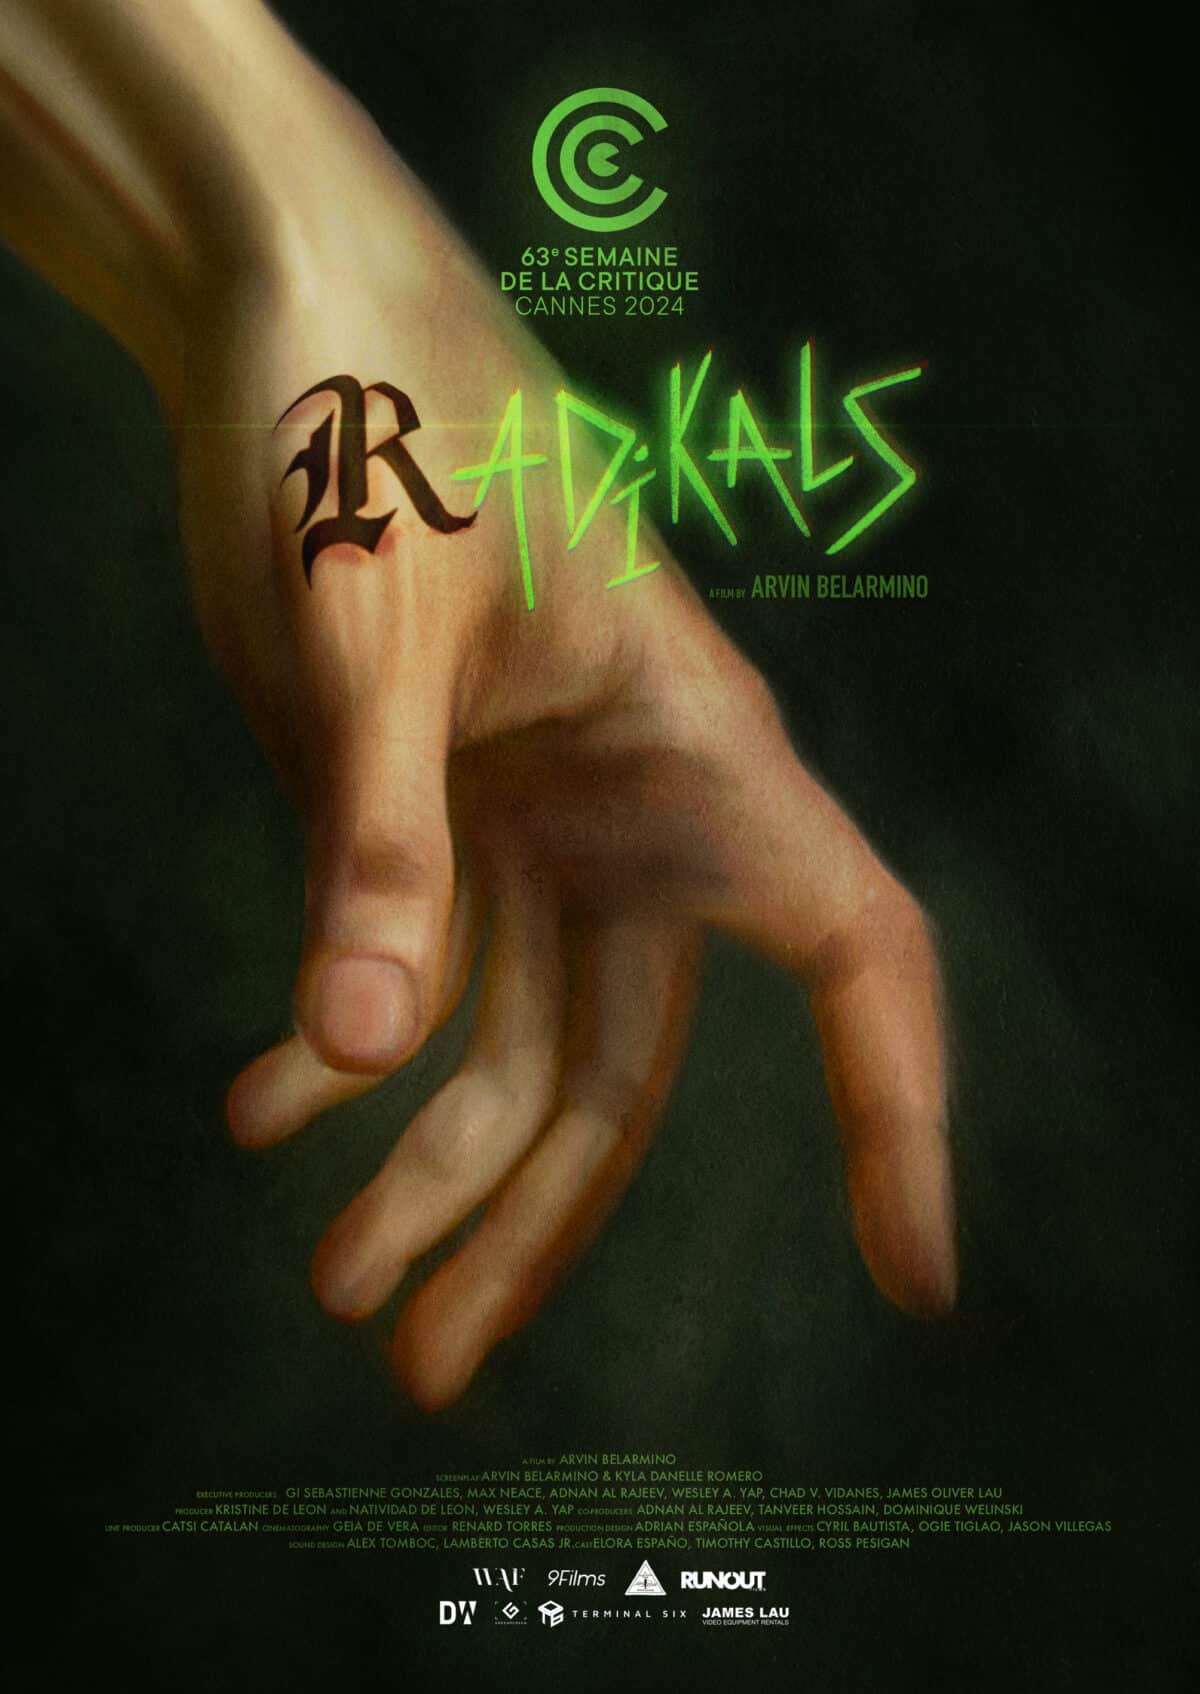 "Radikals" official poster | Image: Waf Studios